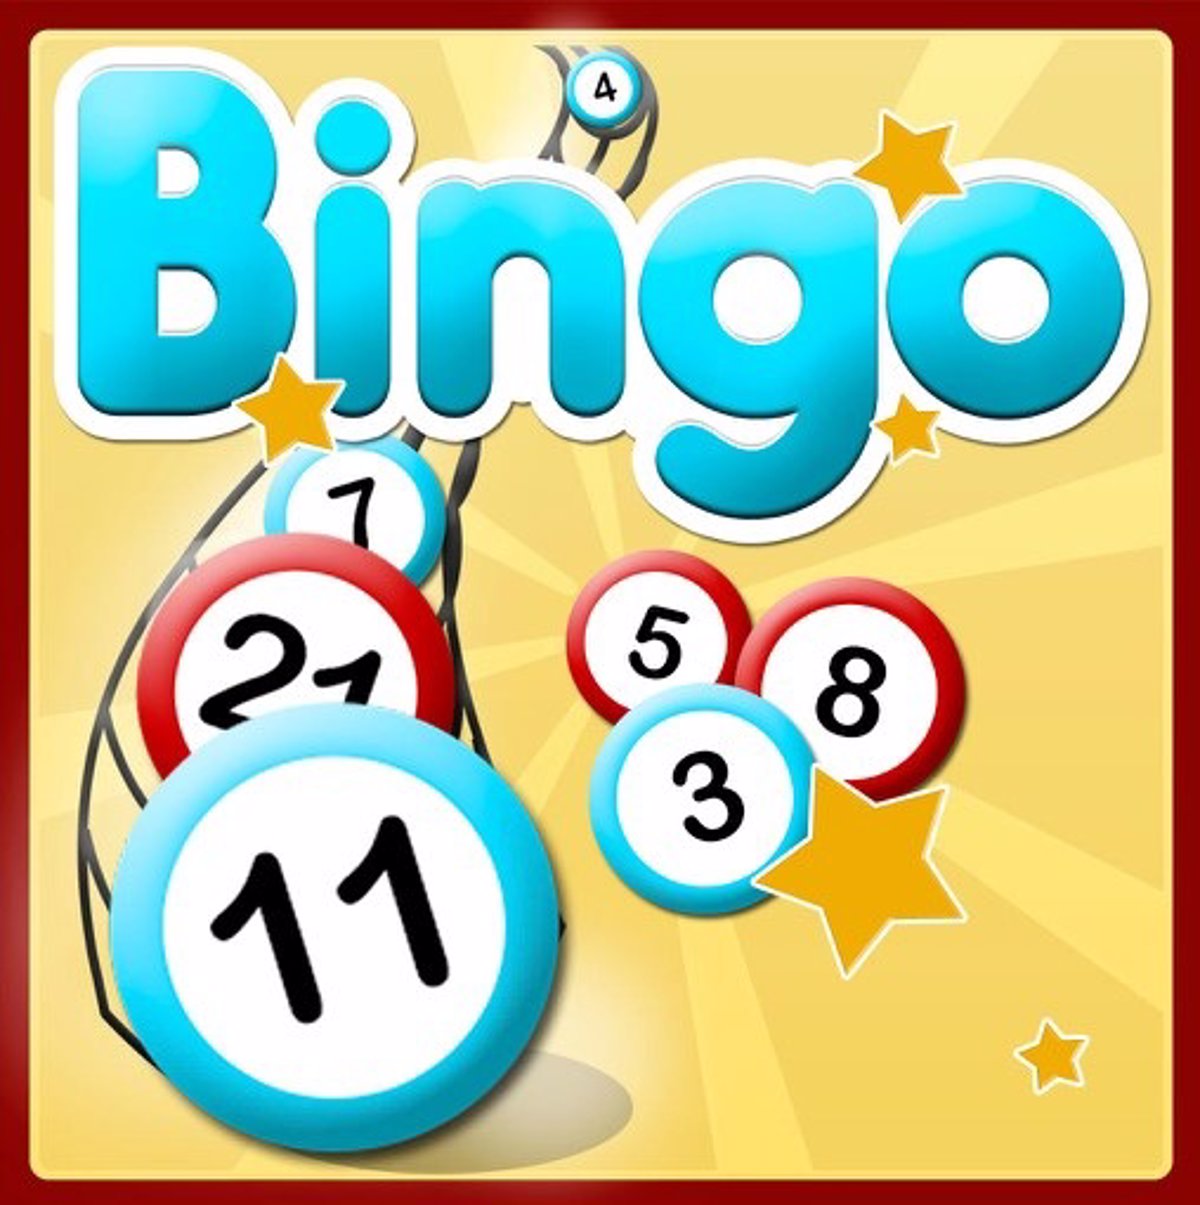 Aplicacion para jugar al bingo